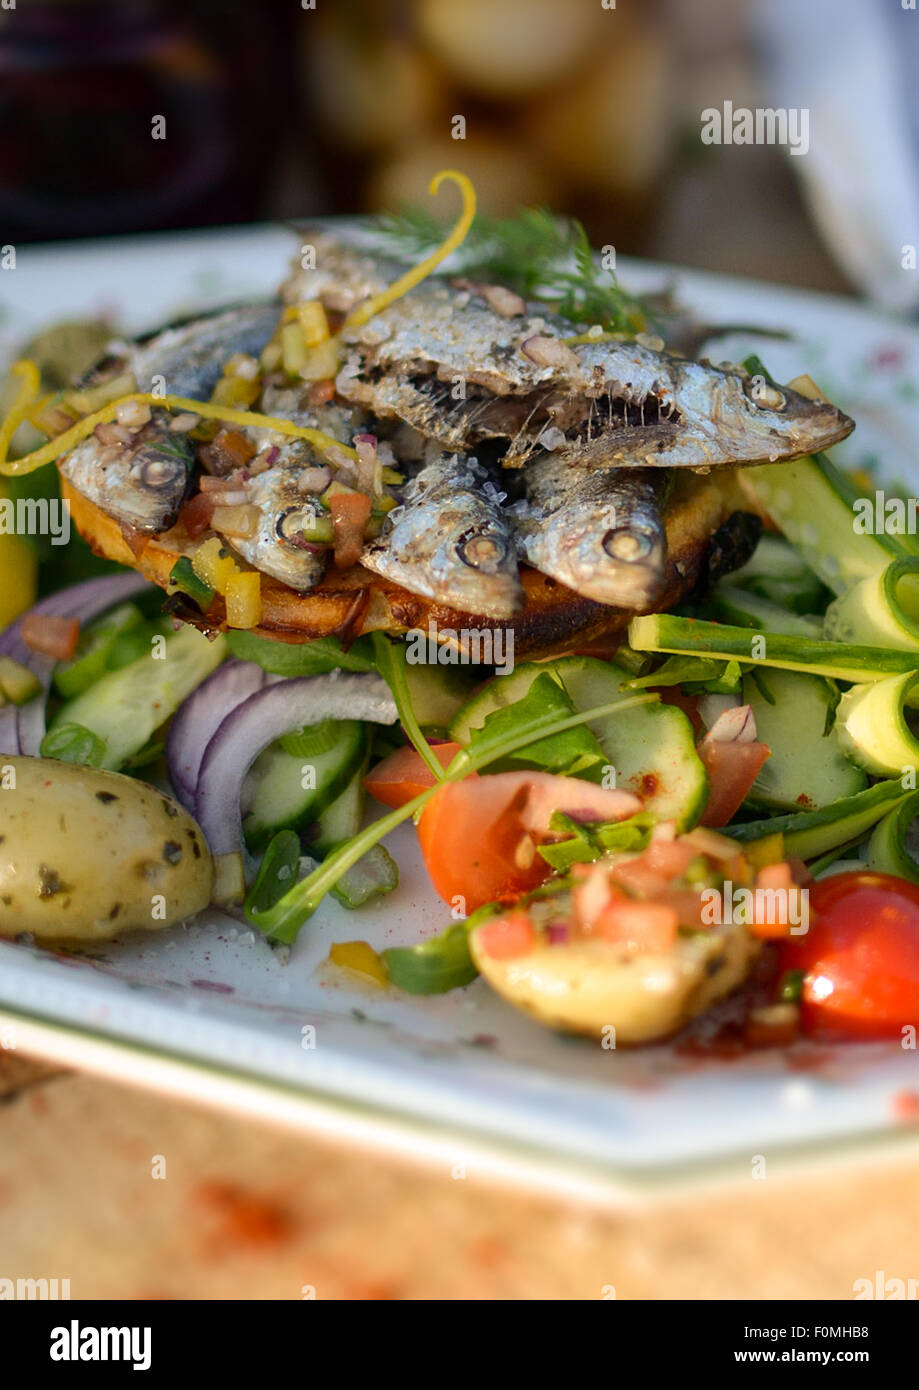 La nourriture cuite, poisson sardines cuites, grillées, repas, déjeuner, cuisine, saine, fruits de mer, gourmet, frais, sardine, plaque, Mediterrane Banque D'Images